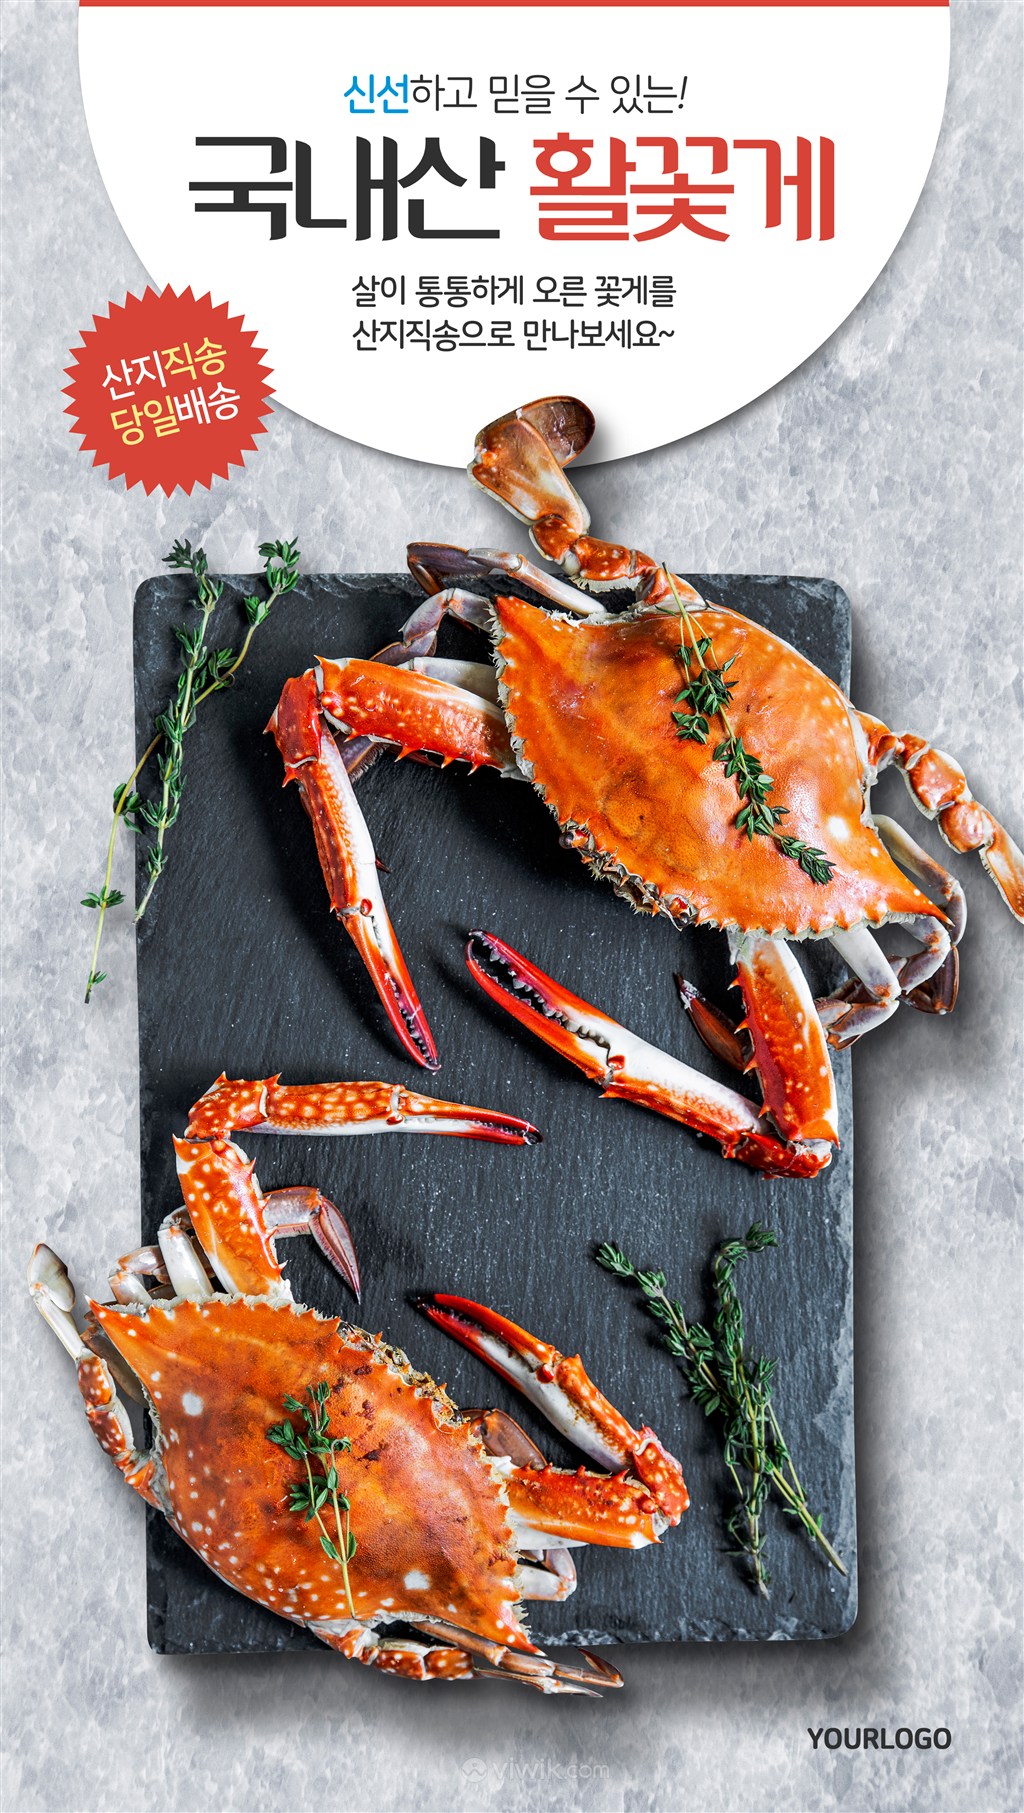 精美螃蟹海鲜美食广告海报素材